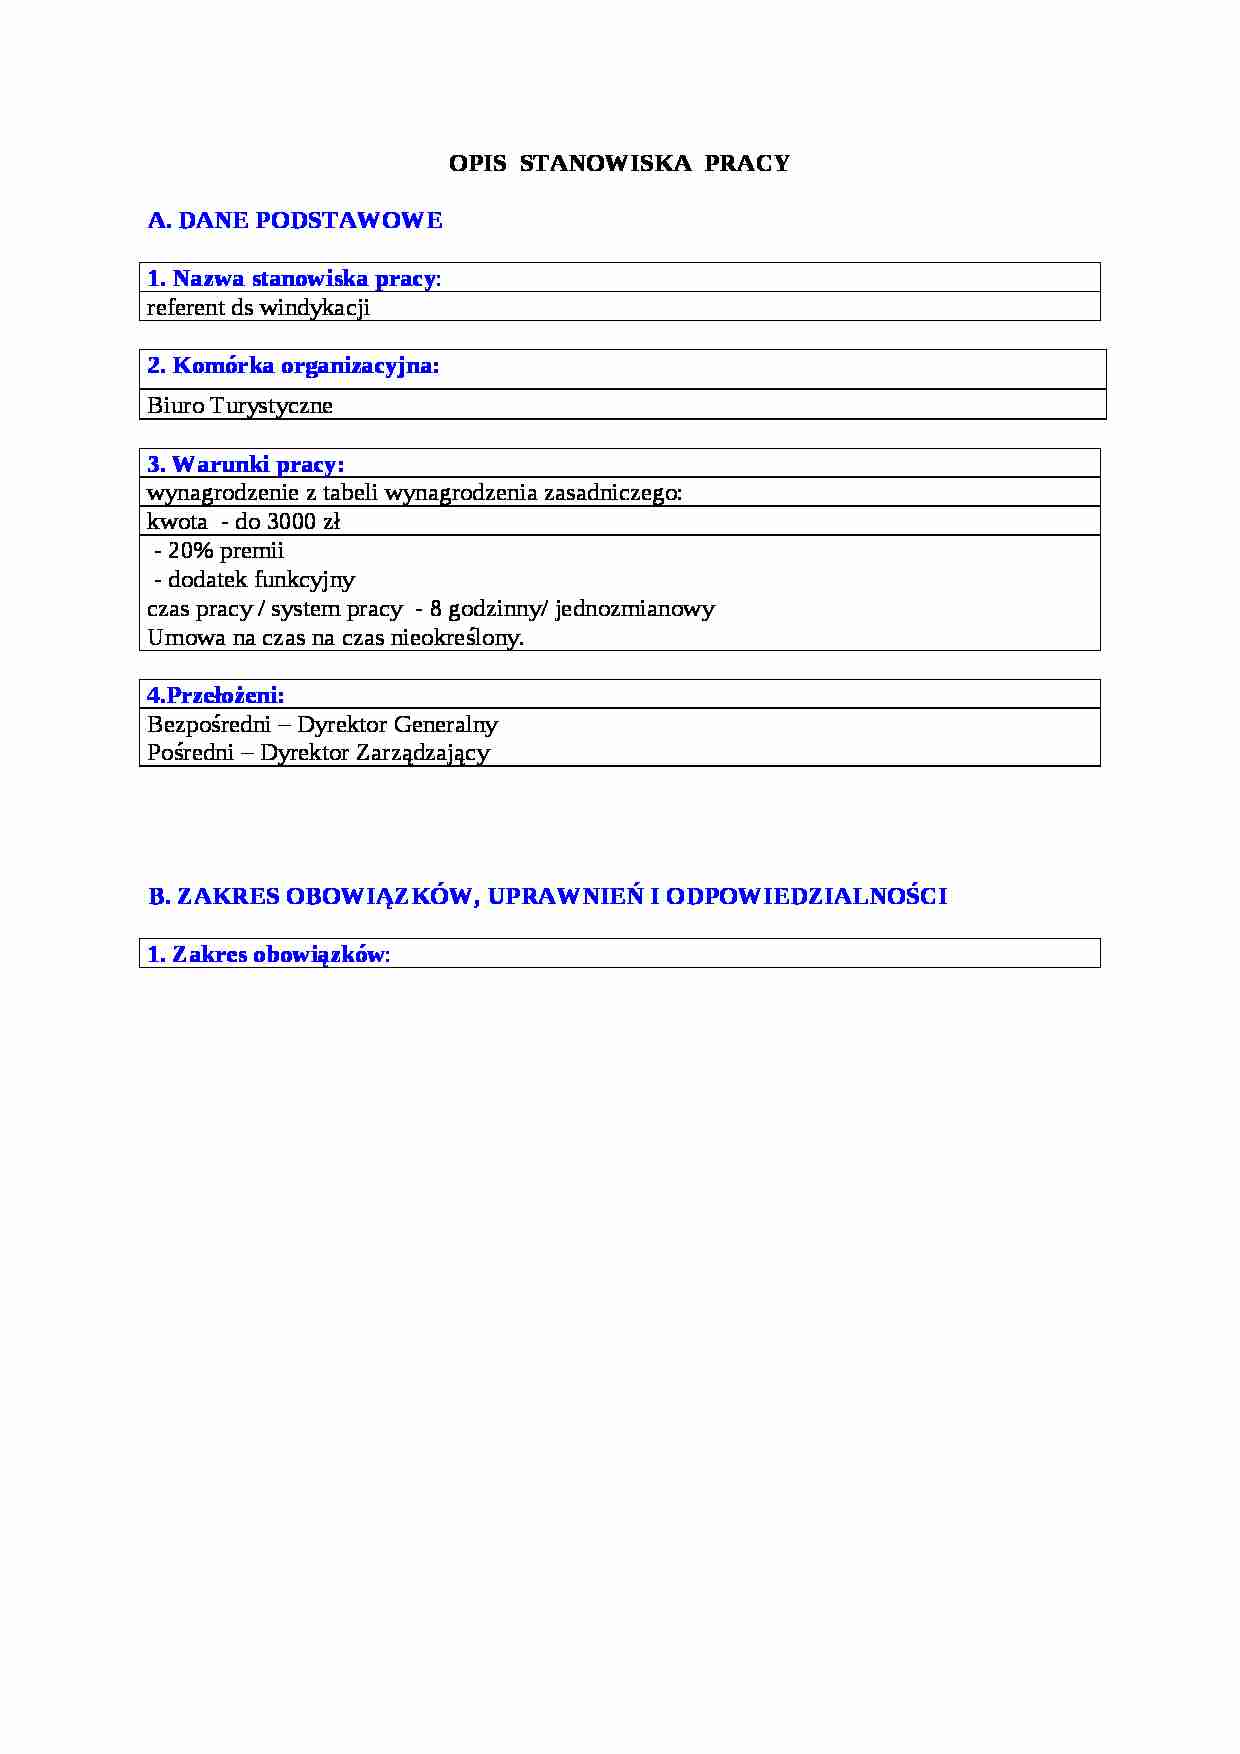 Opis stanowiska pracy referenta ds. windykacji- praca zaliczeniowa - strona 1